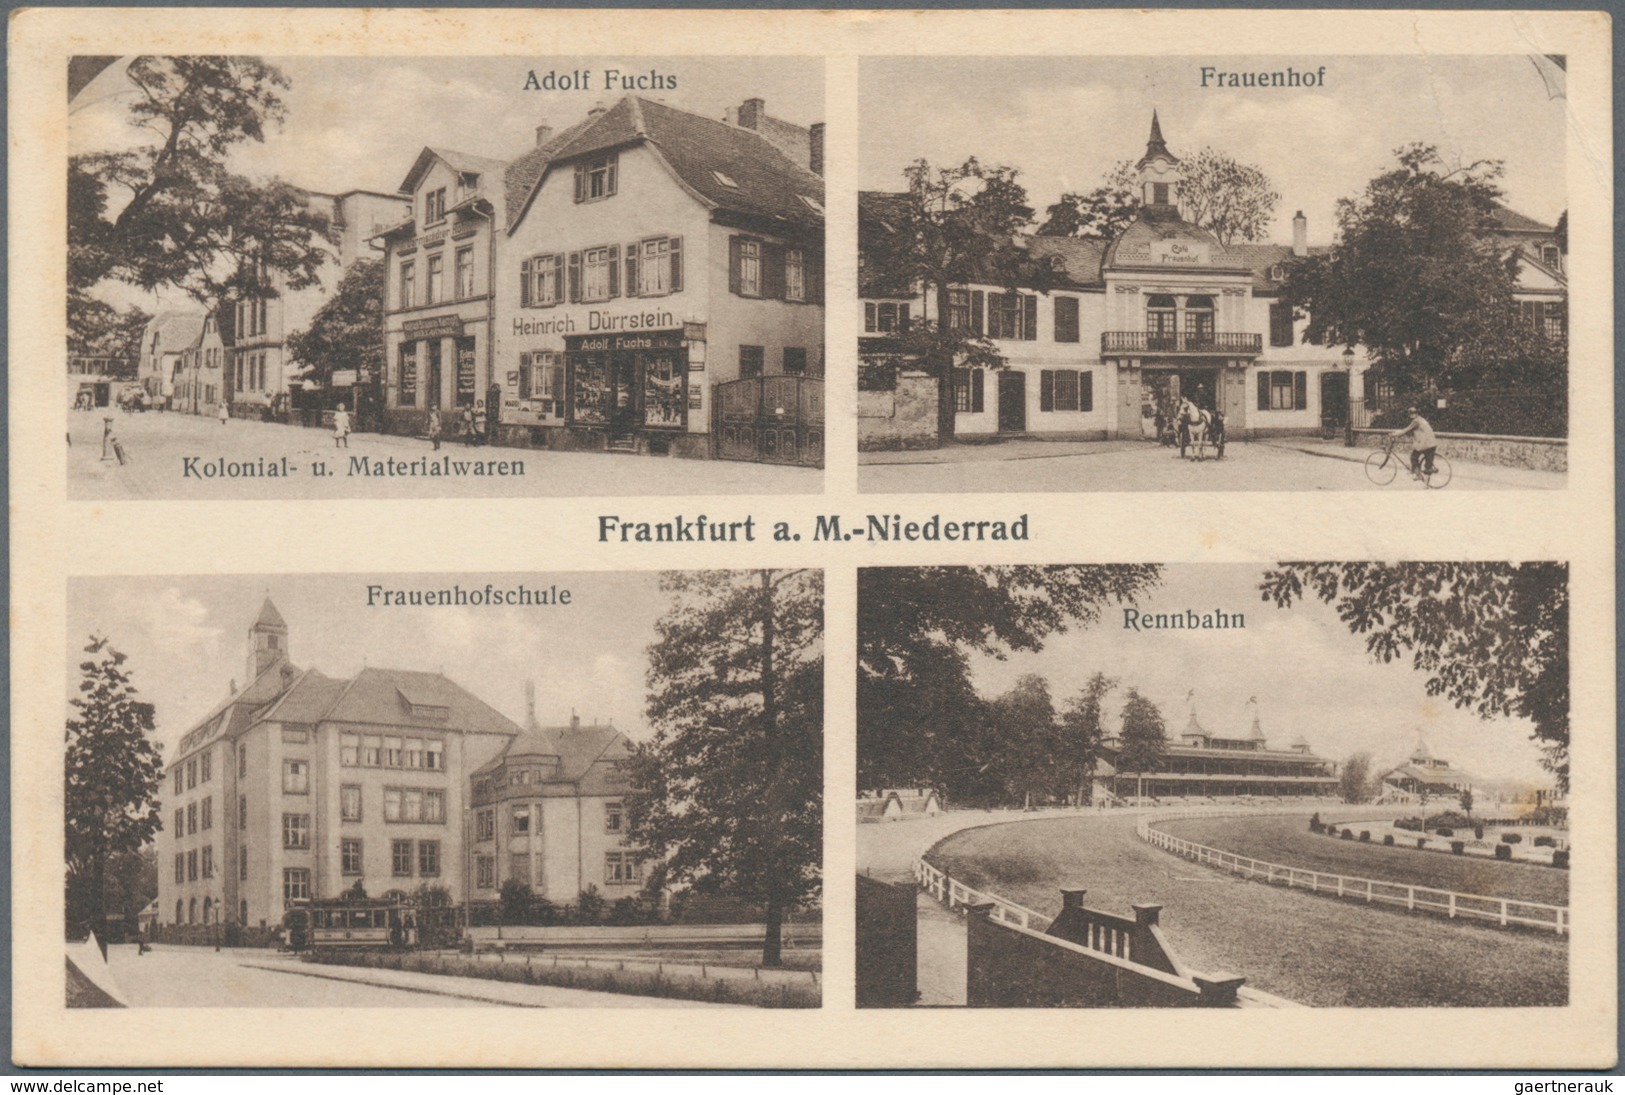 Ansichtskarten: Deutschland: 1900/1960 (ca.), Deutschland/Europa, Partie von ca. 300 Ansichtskarten,